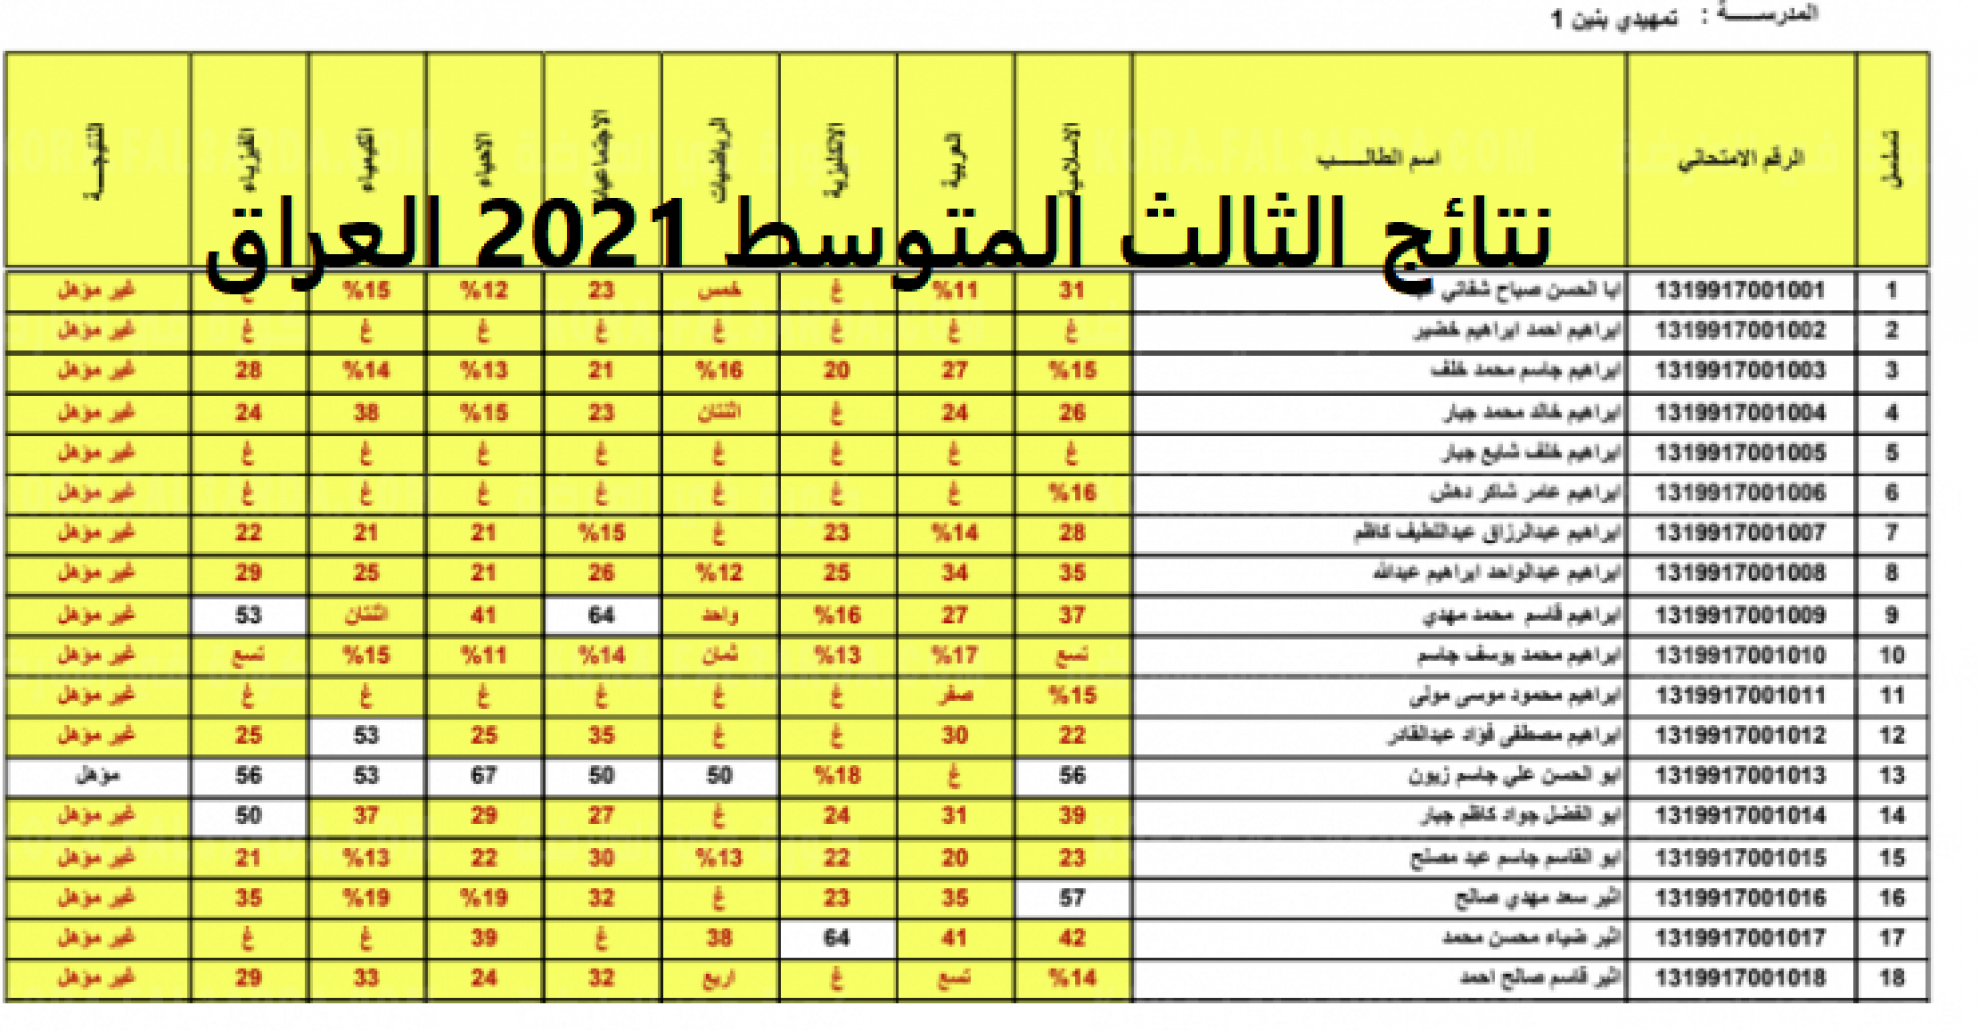 نتائج الثالث متوسط 2021 الدور الثالث "بالرقم الامتحاني" الأن على موقع وزارة التربية والتعليم العراقية